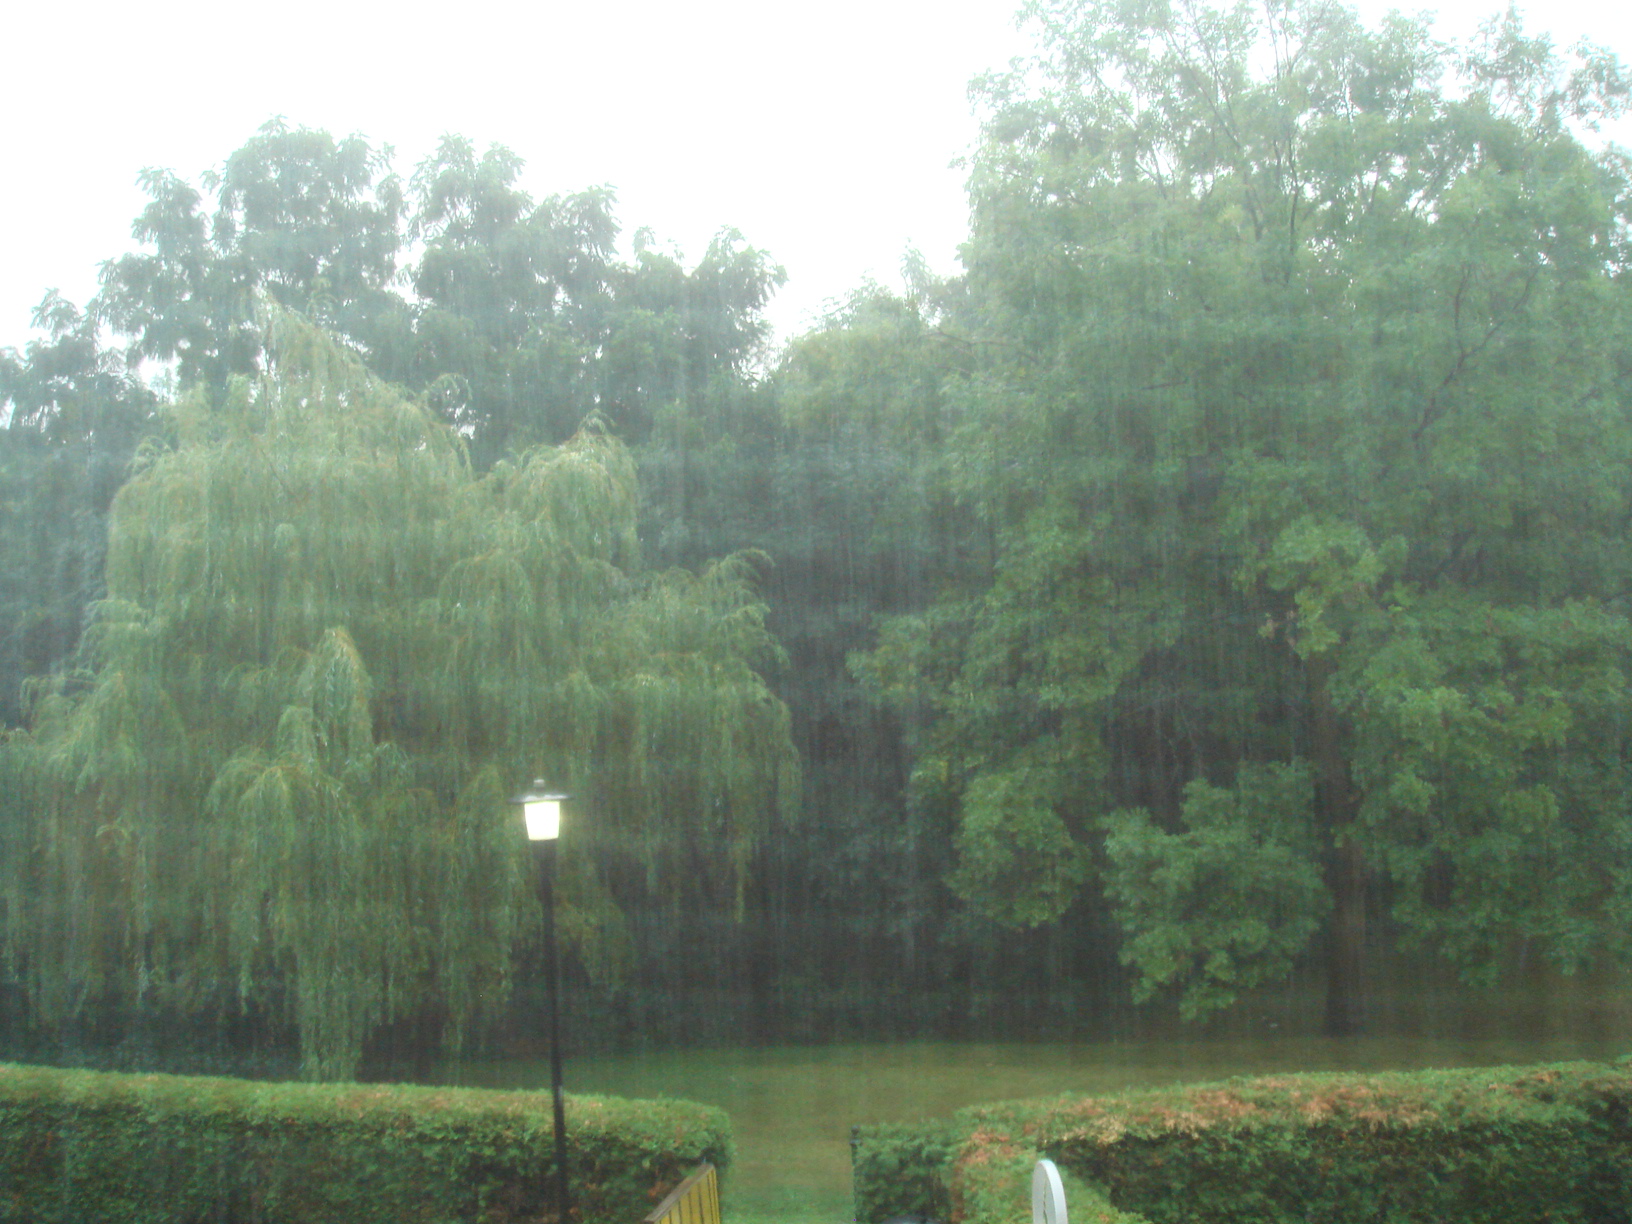 这时候雨最大，所以密集的雨使画面模糊雾蒙蒙的